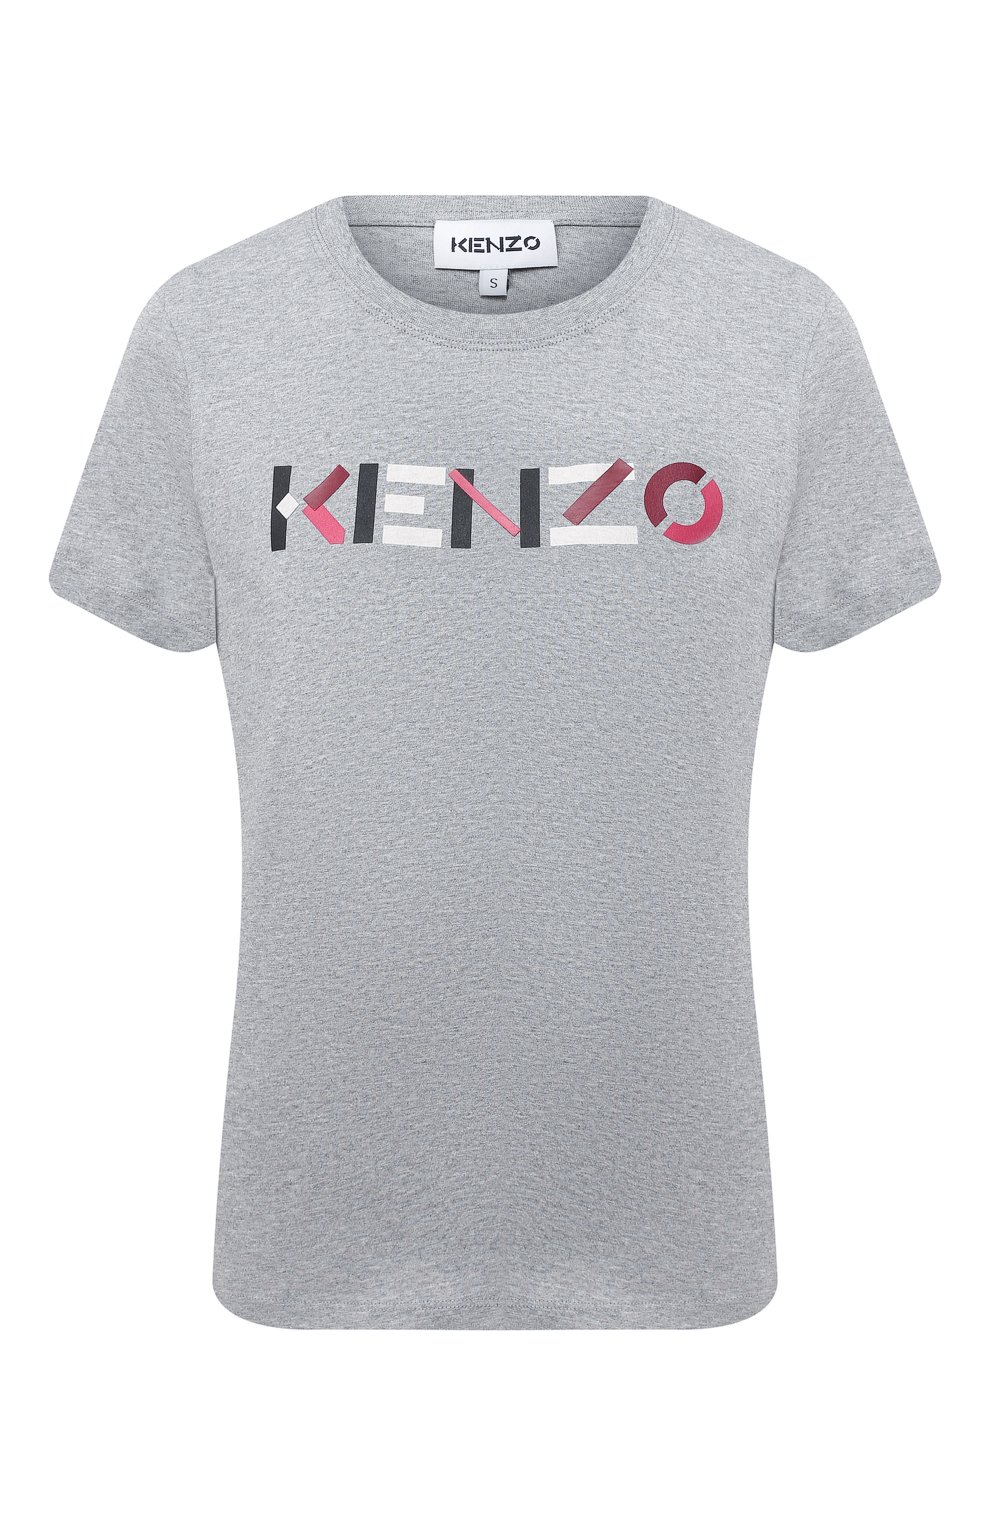 Футболки и топы Kenzo, Хлопковая футболка Kenzo, Португалия, Серый, Хлопок: 100%;, 11268993  - купить